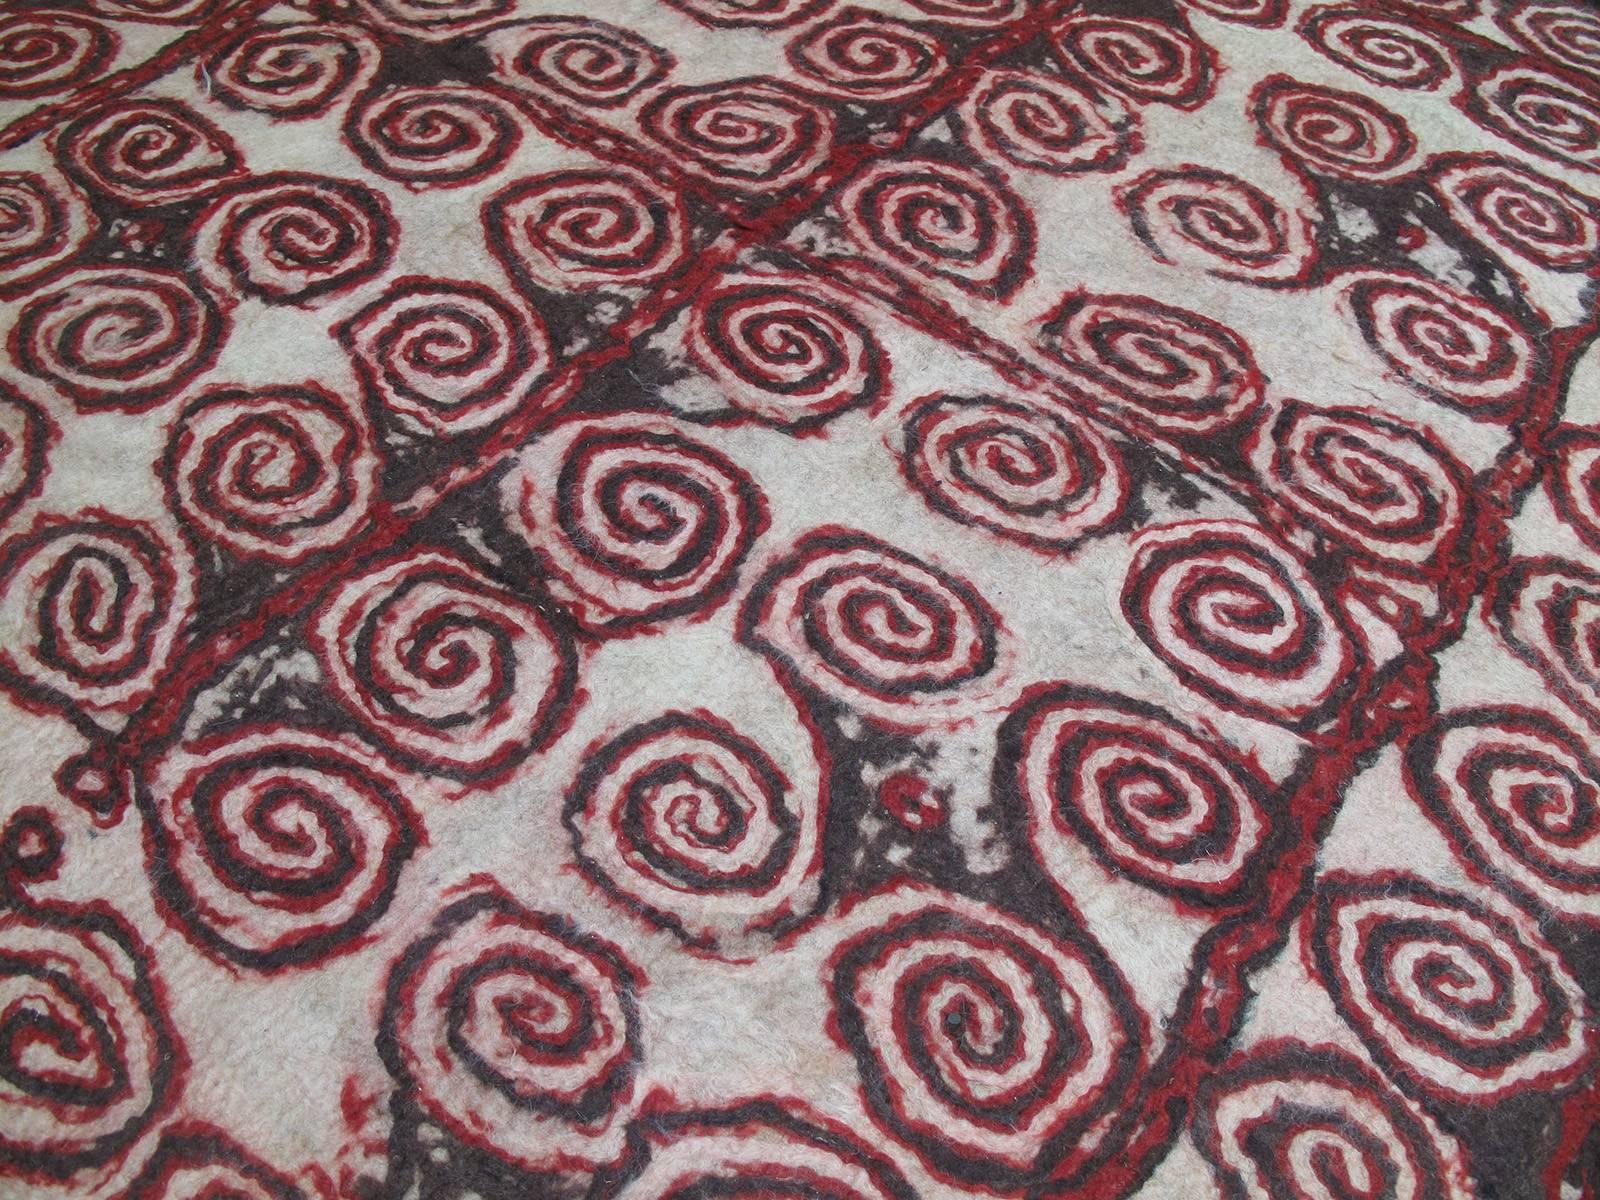 Tribal Central Asian Felt Carpet For Sale